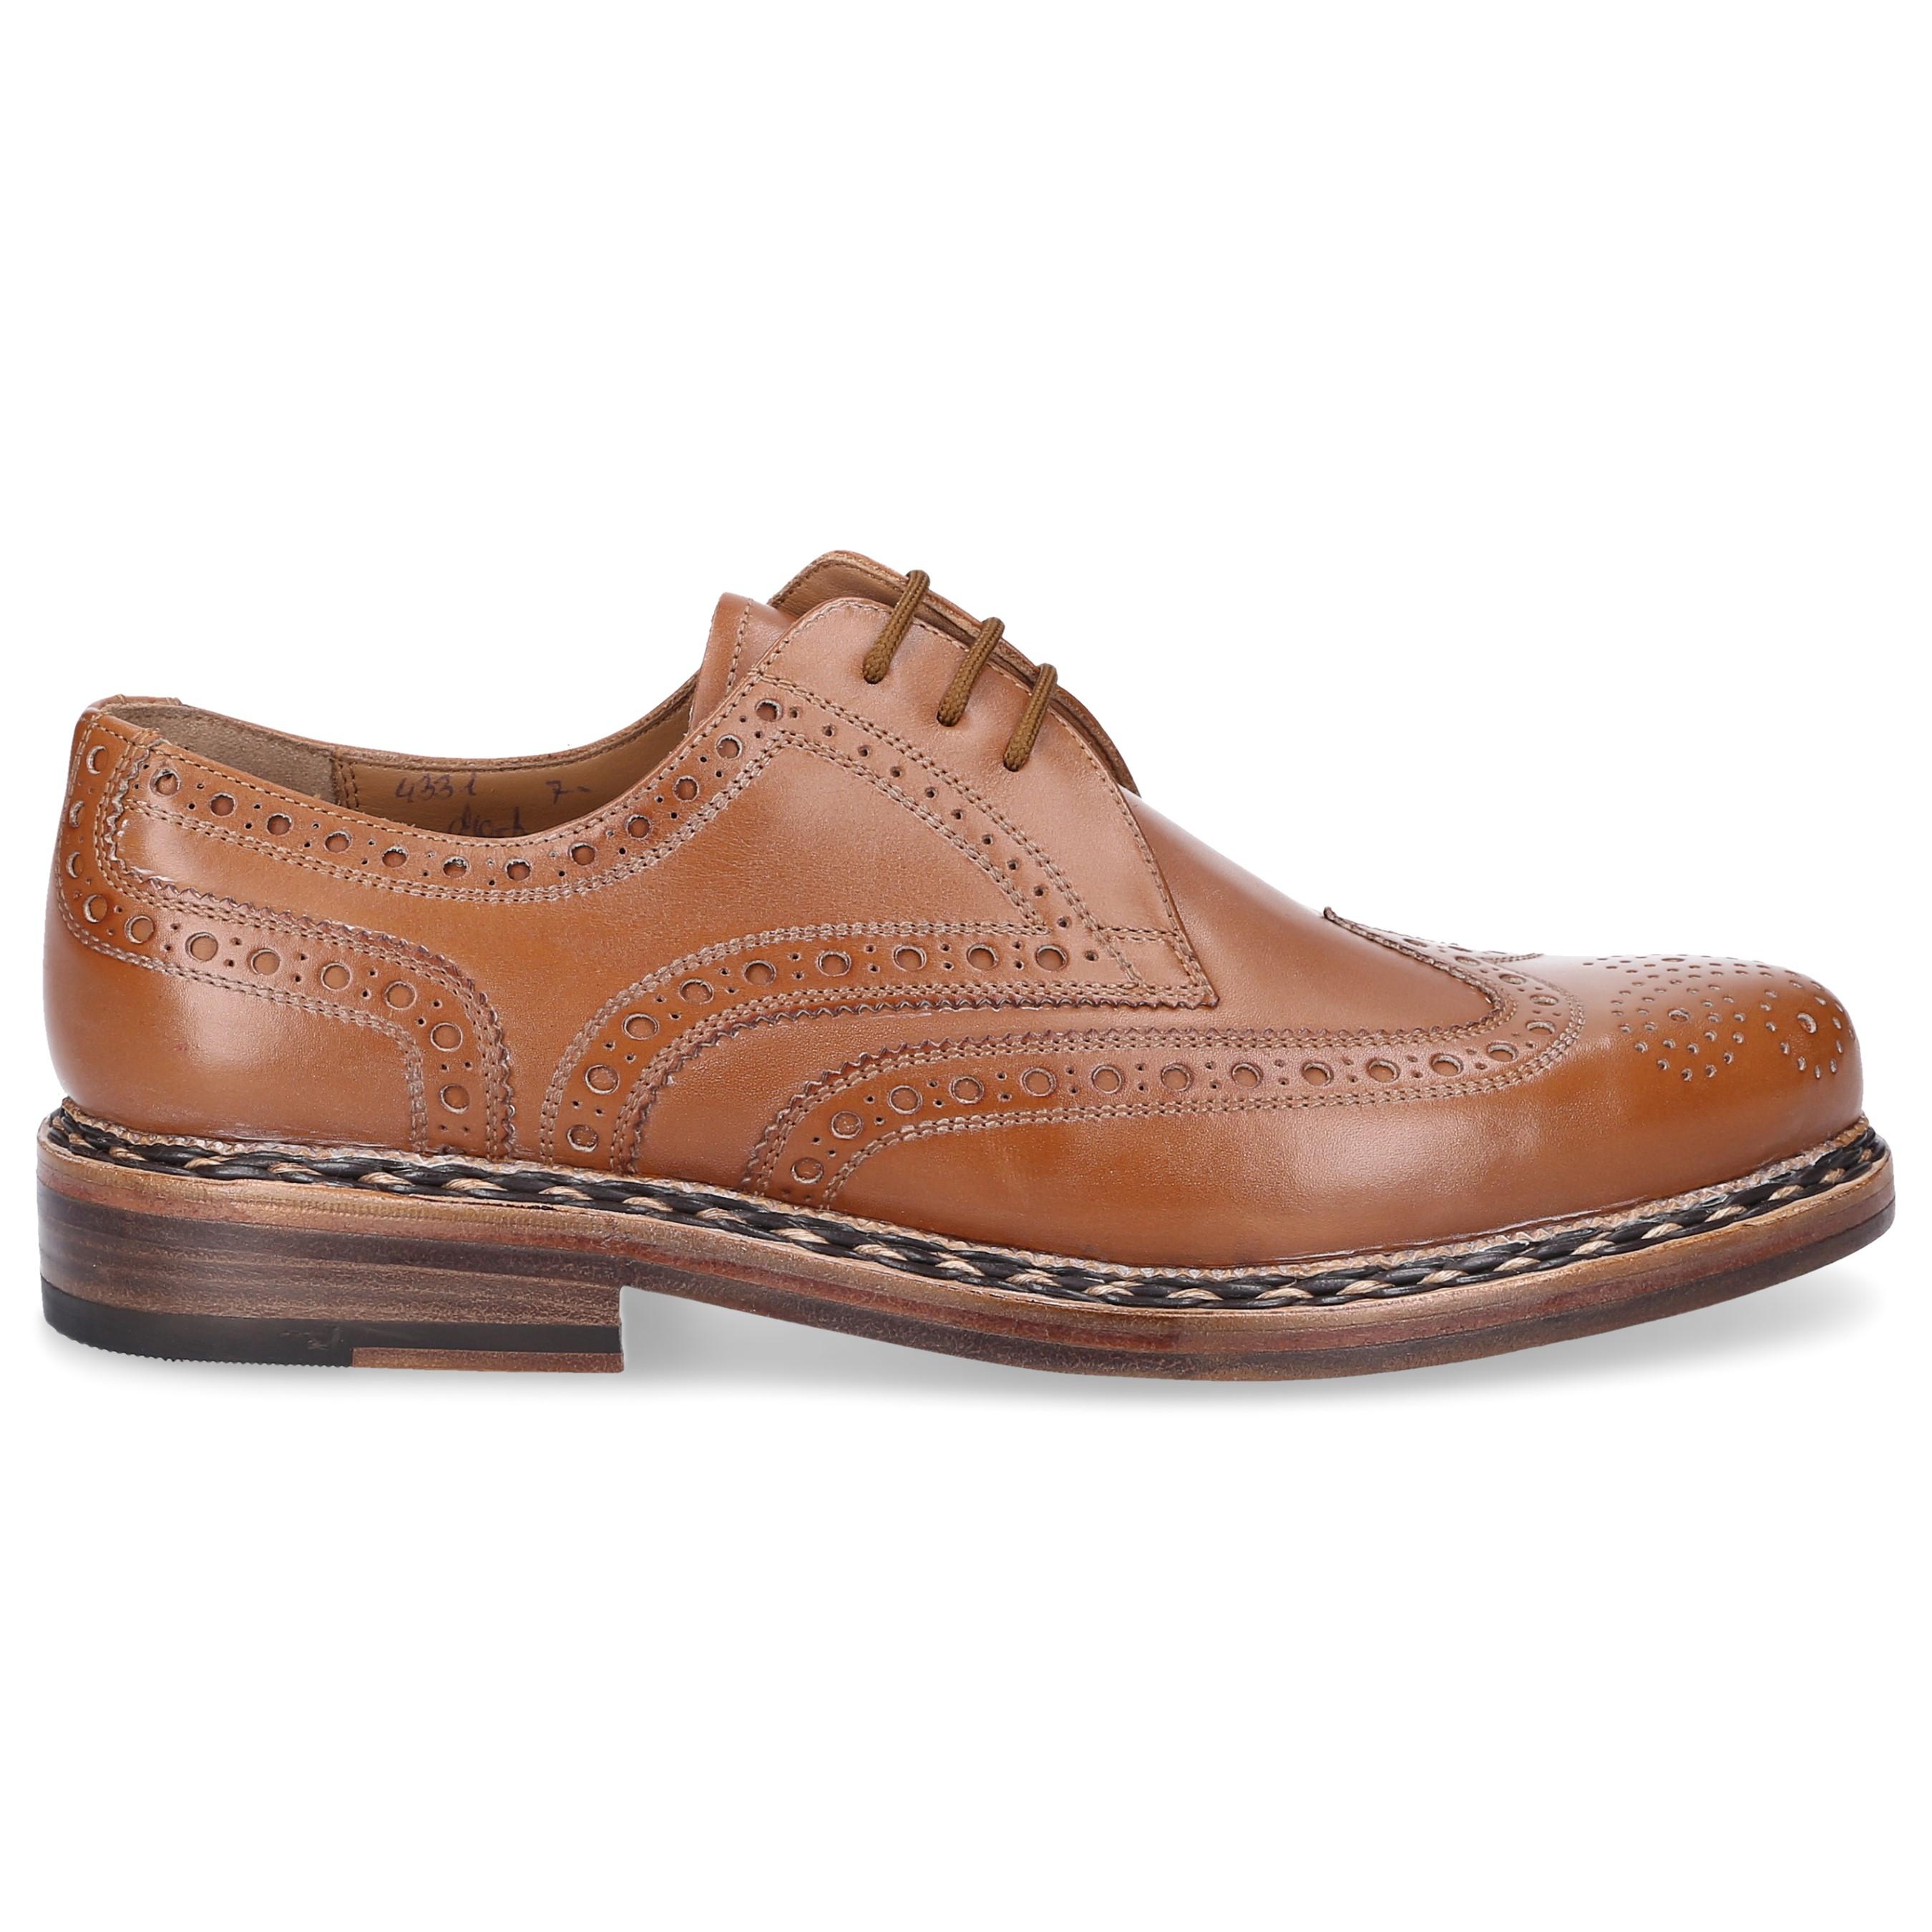 Heinrich Dinkelacker Leather Business Shoes Derby 4331 in Brown for Men